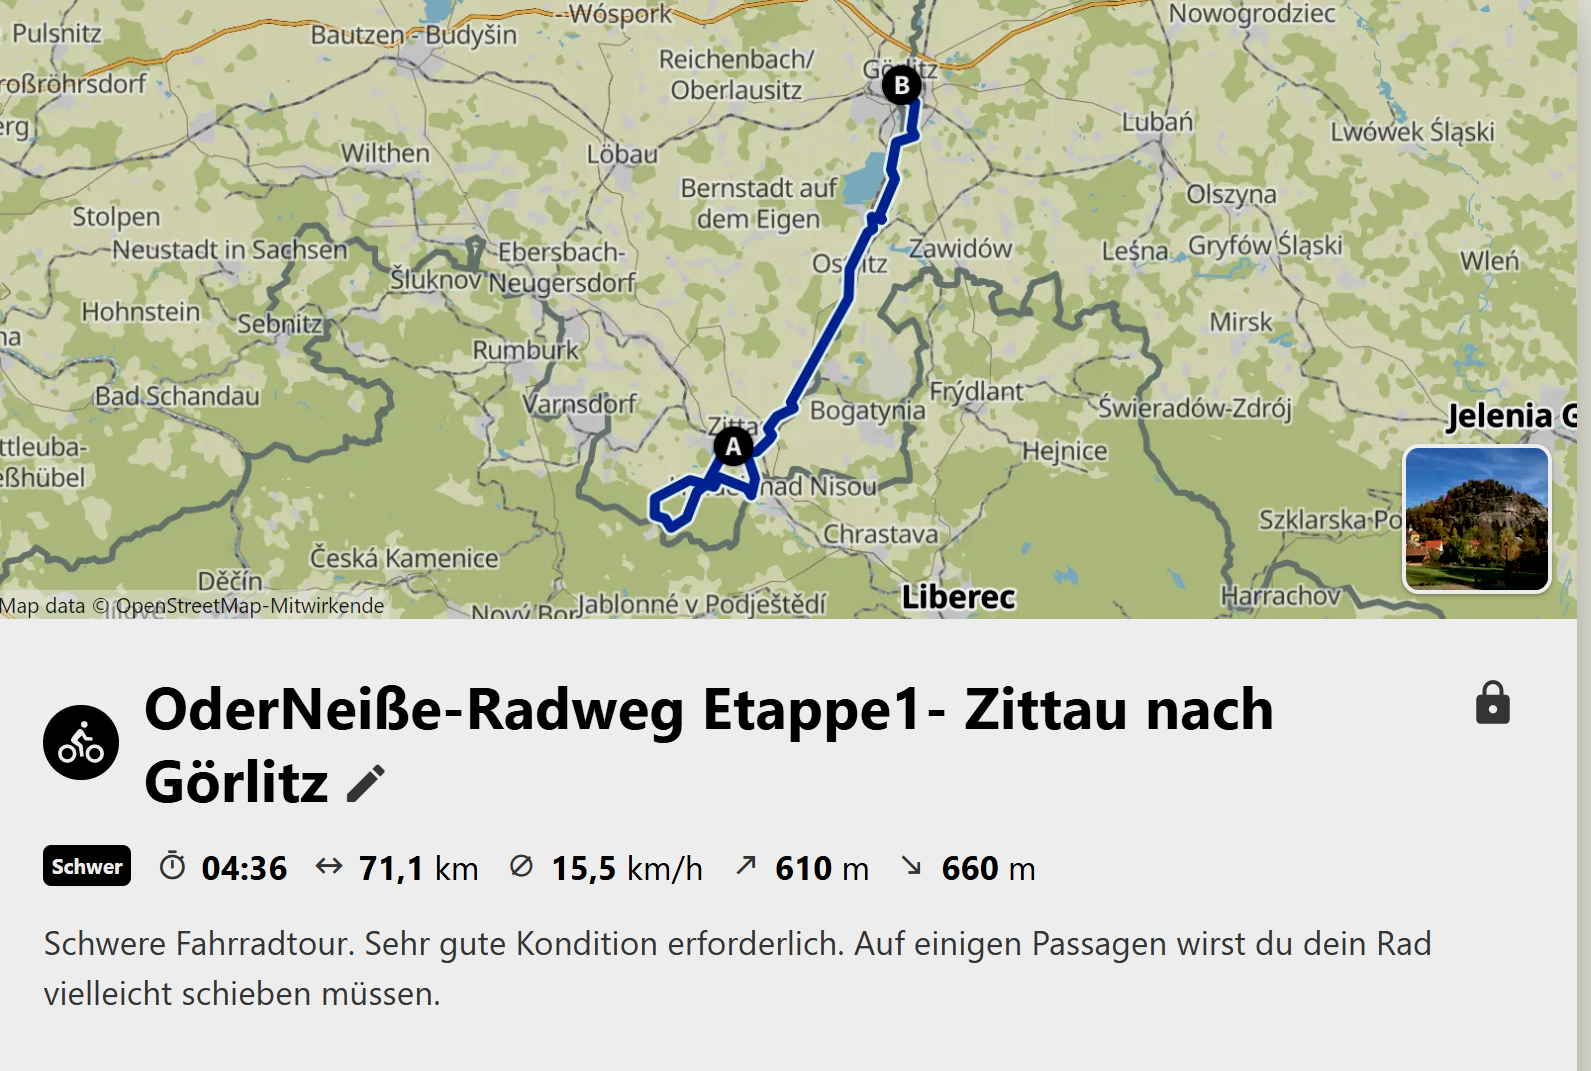 Tour-Planung OderNeisse-Radweg